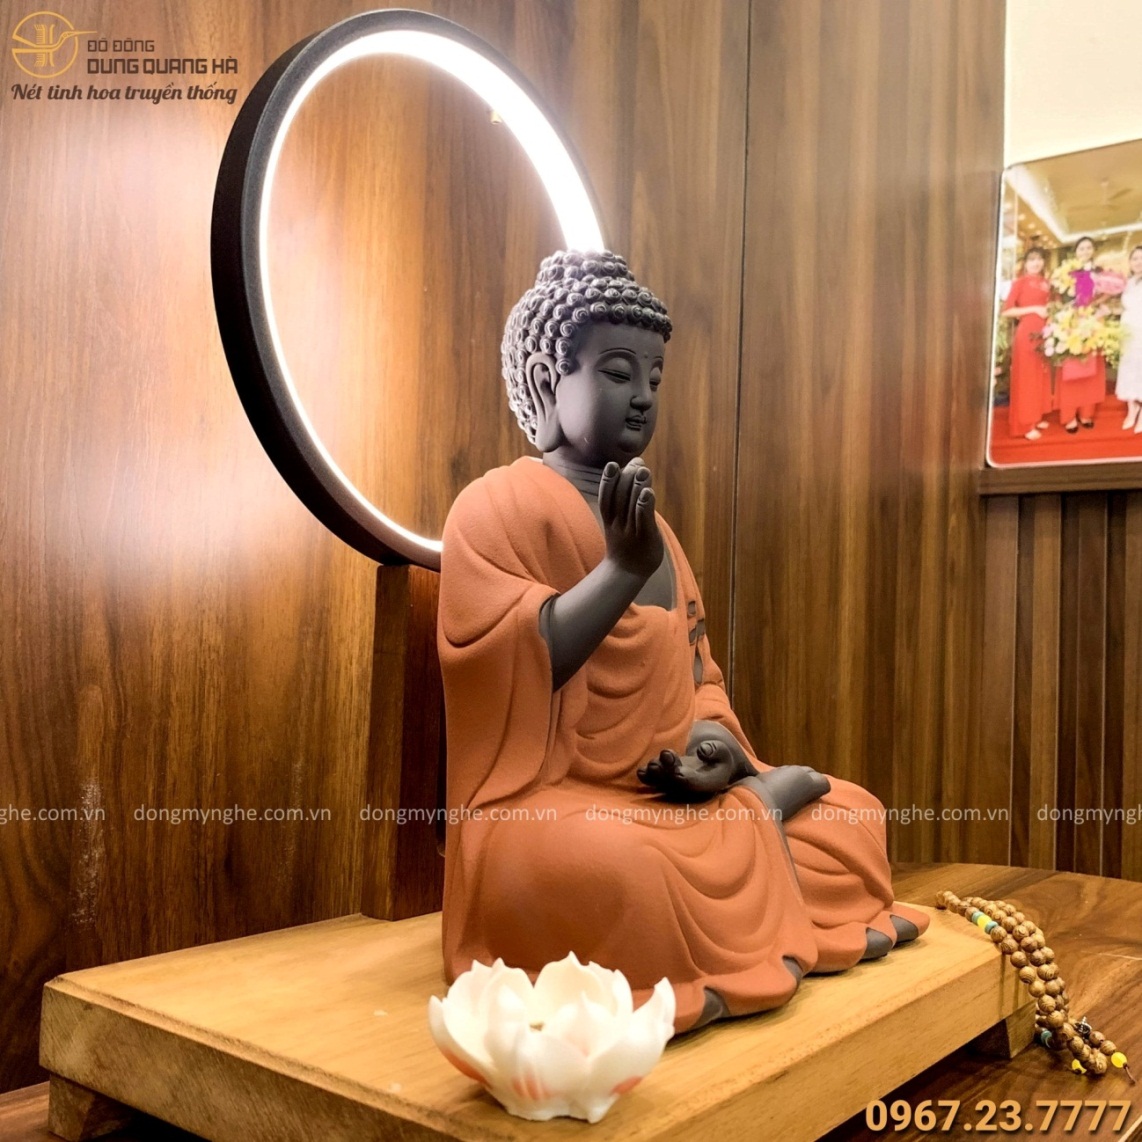 Tượng Phật ADiDa bằng gốm tử sa decor có đèn LED 45x35cm